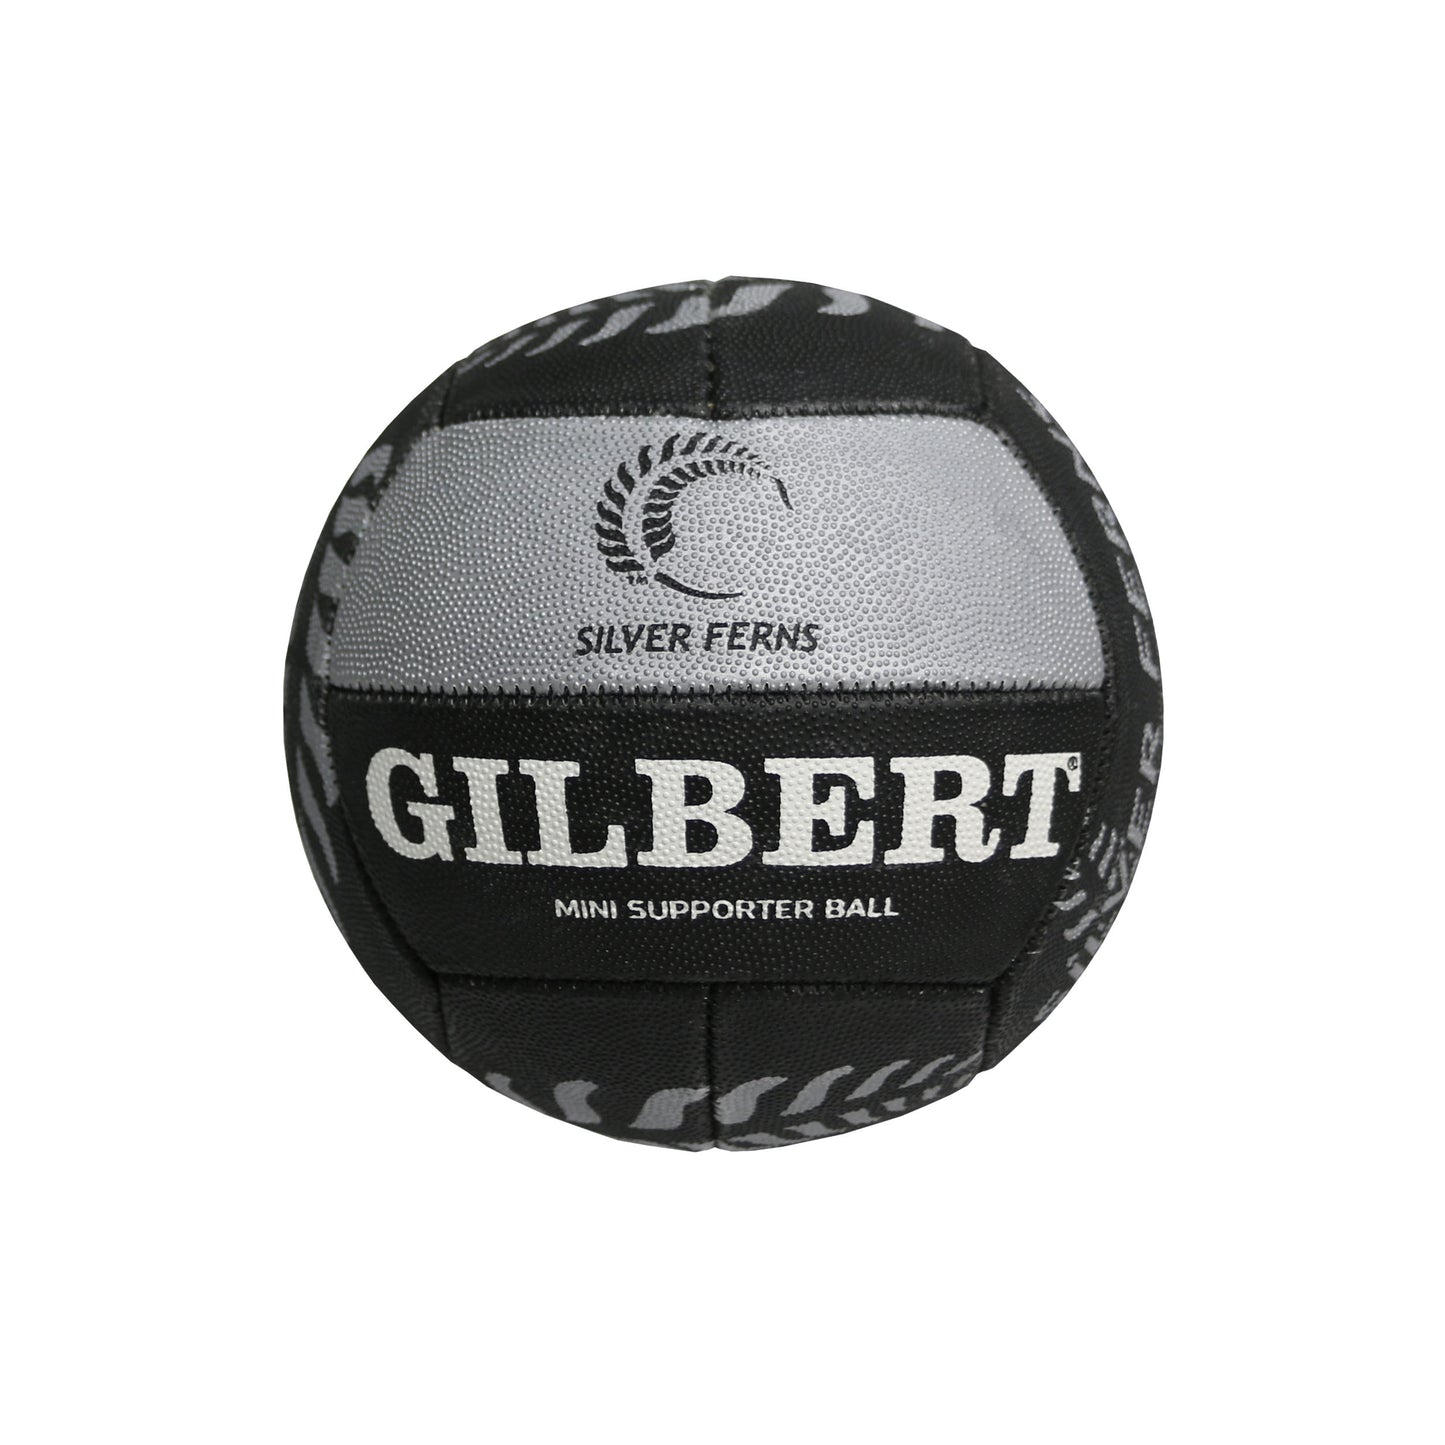 Gilbert - Silver Ferns Supporter Ball Mini